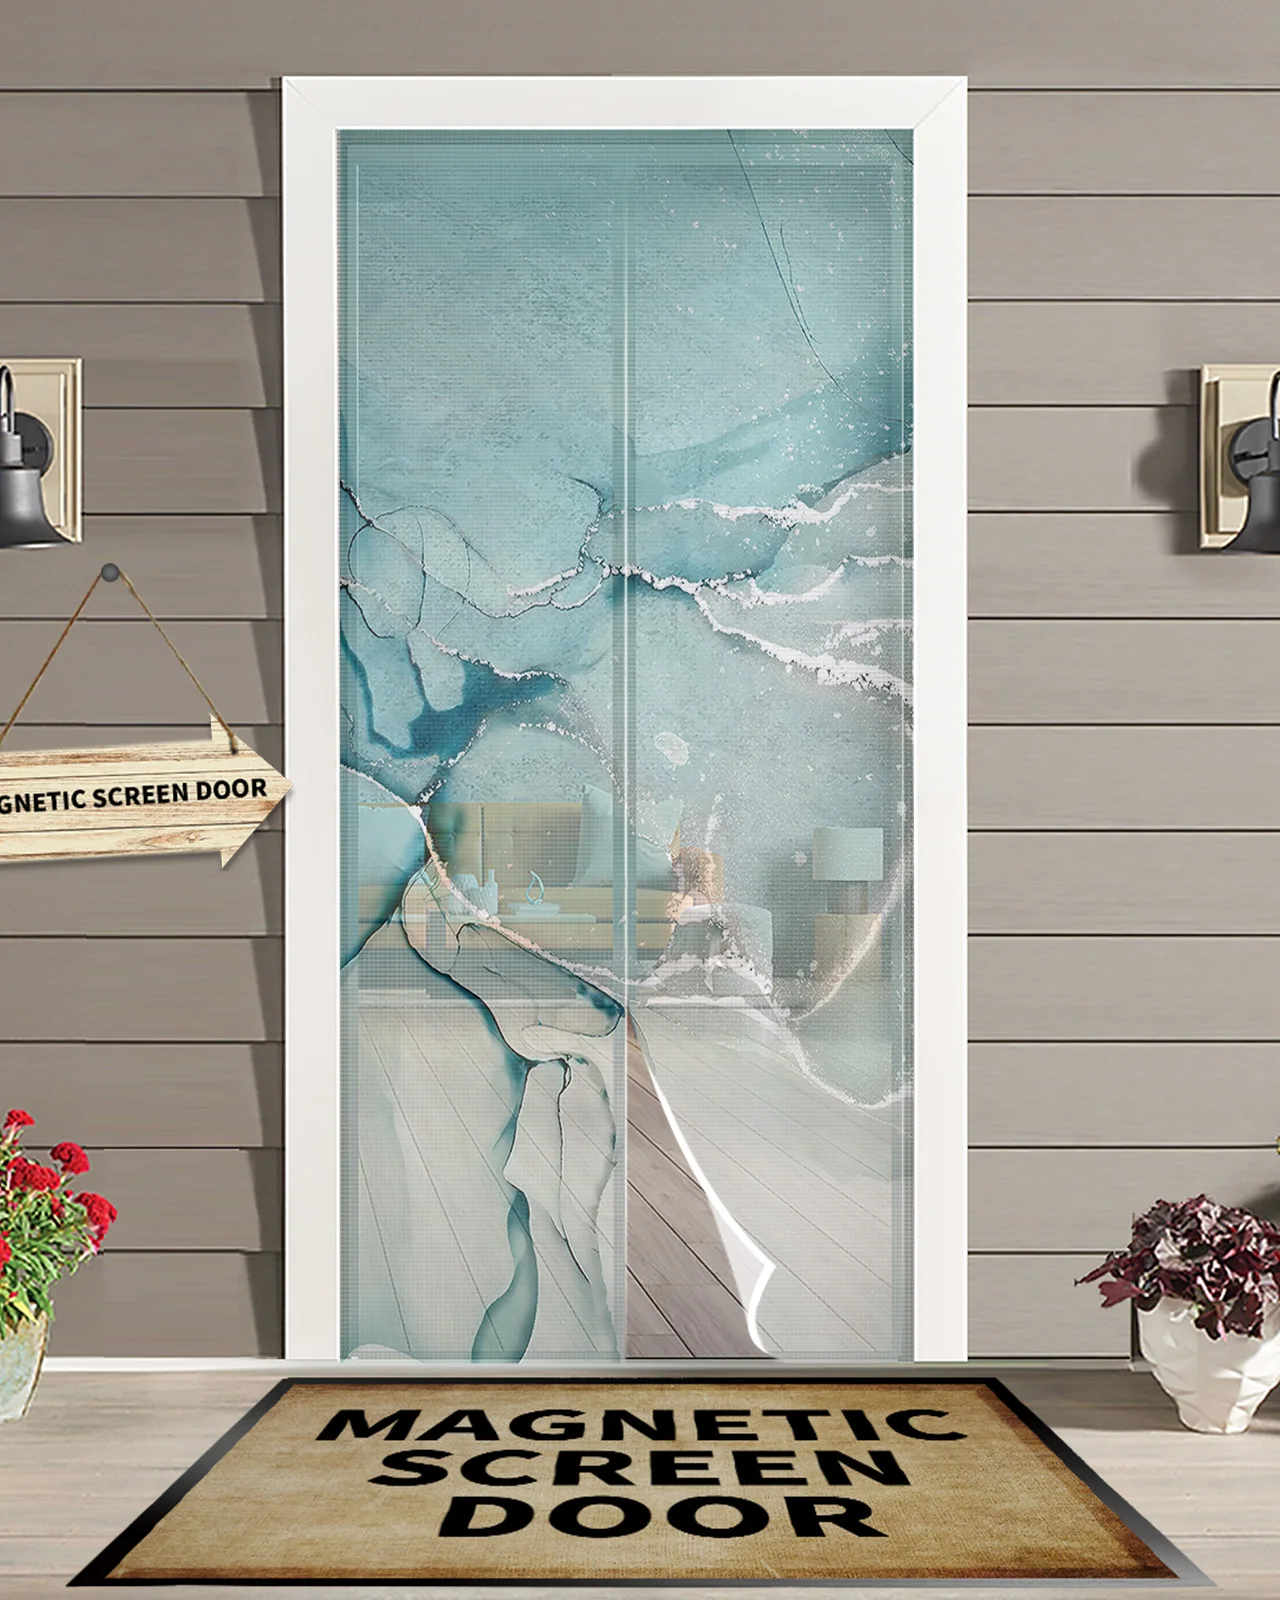 

Мраморная Аква анти-москитная Марля дверная занавеска магнитный дверной экран для спальни летняя дверь оконный экран s